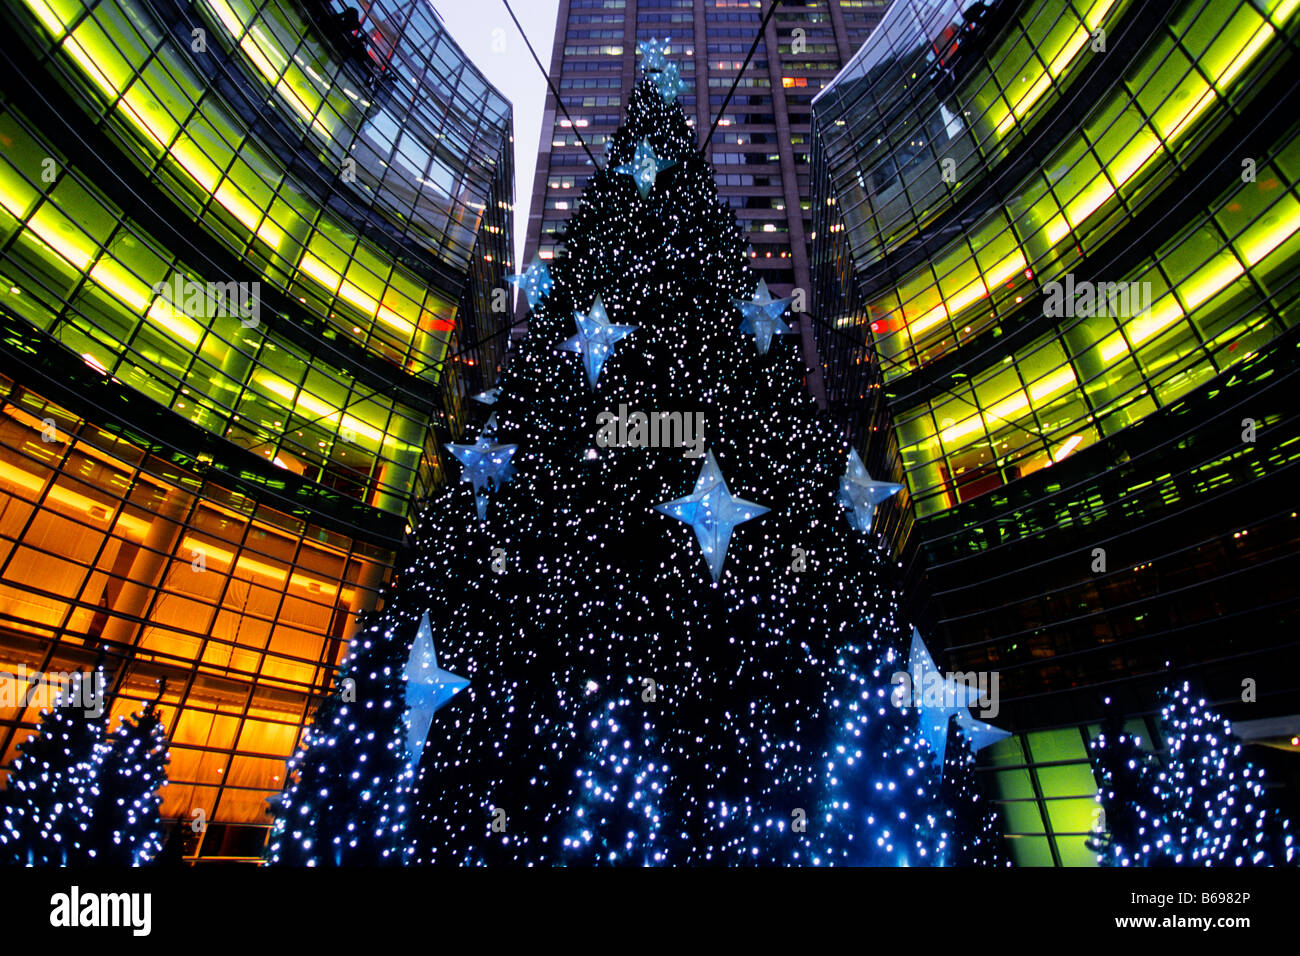 Christmas Tree The Bloomberg Tower, New York. Le gratte-ciel Midtown Manhattan s'illumine pour les vacances. ÉTATS-UNIS Banque D'Images